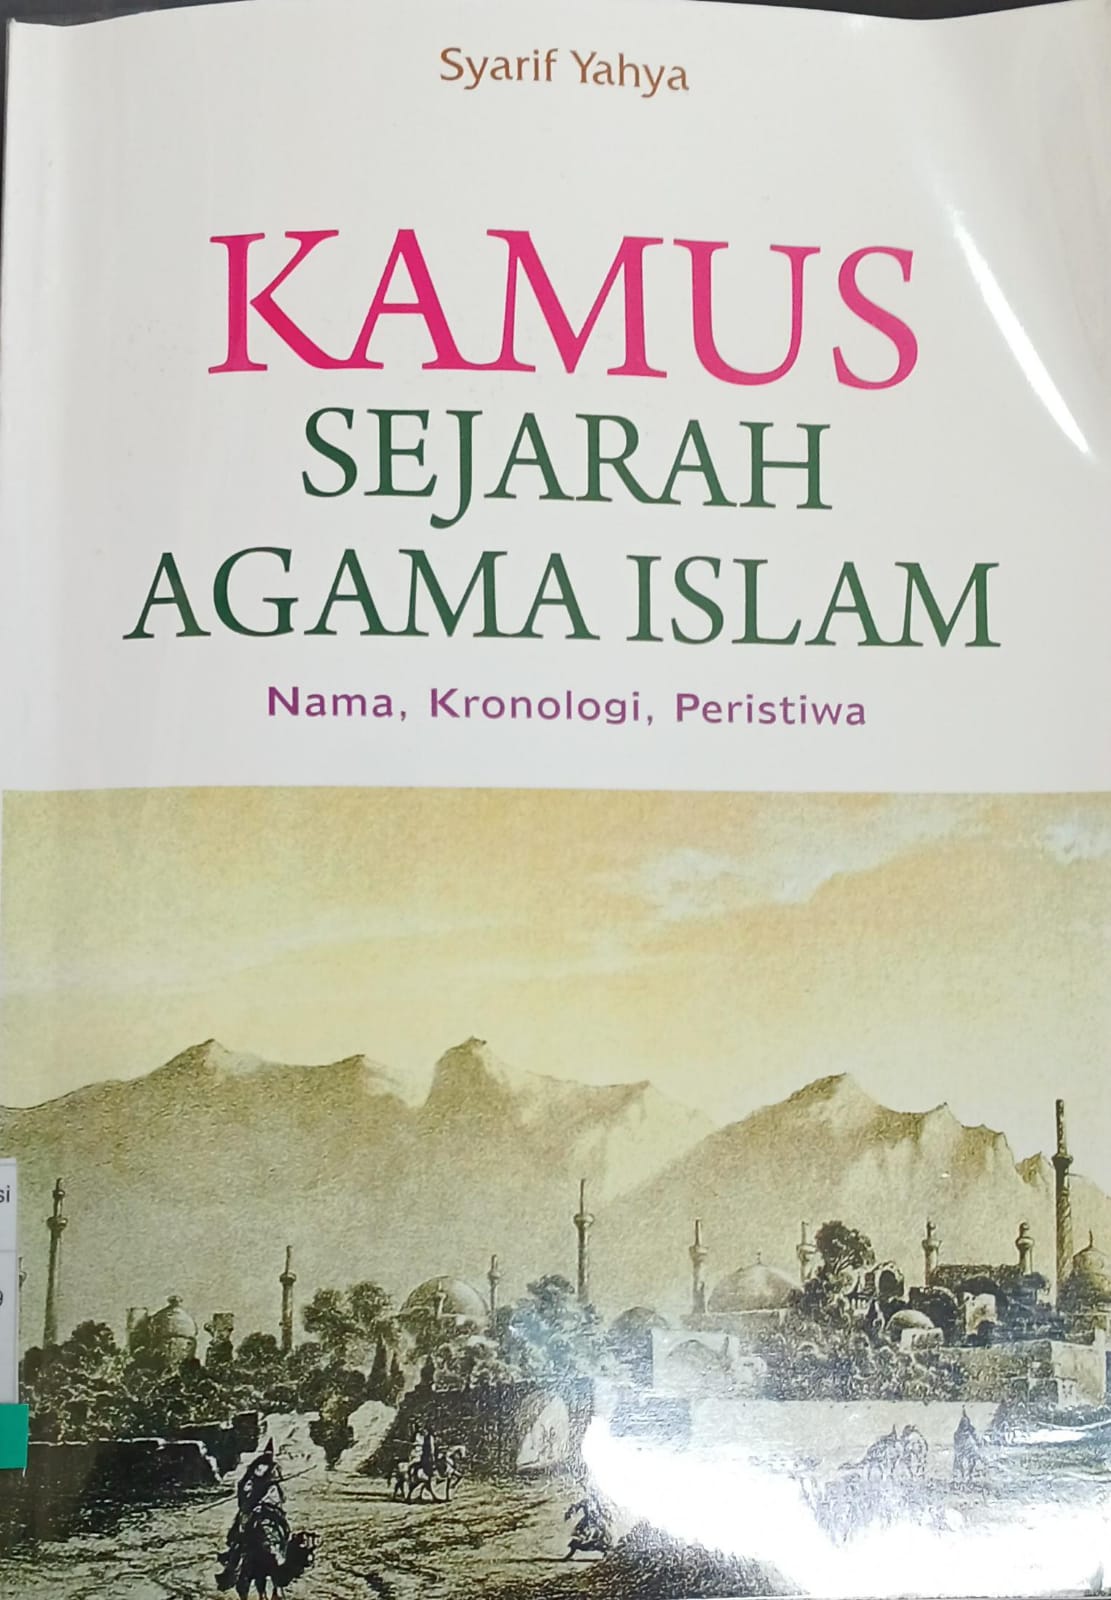 Kamus sejarah agama islam